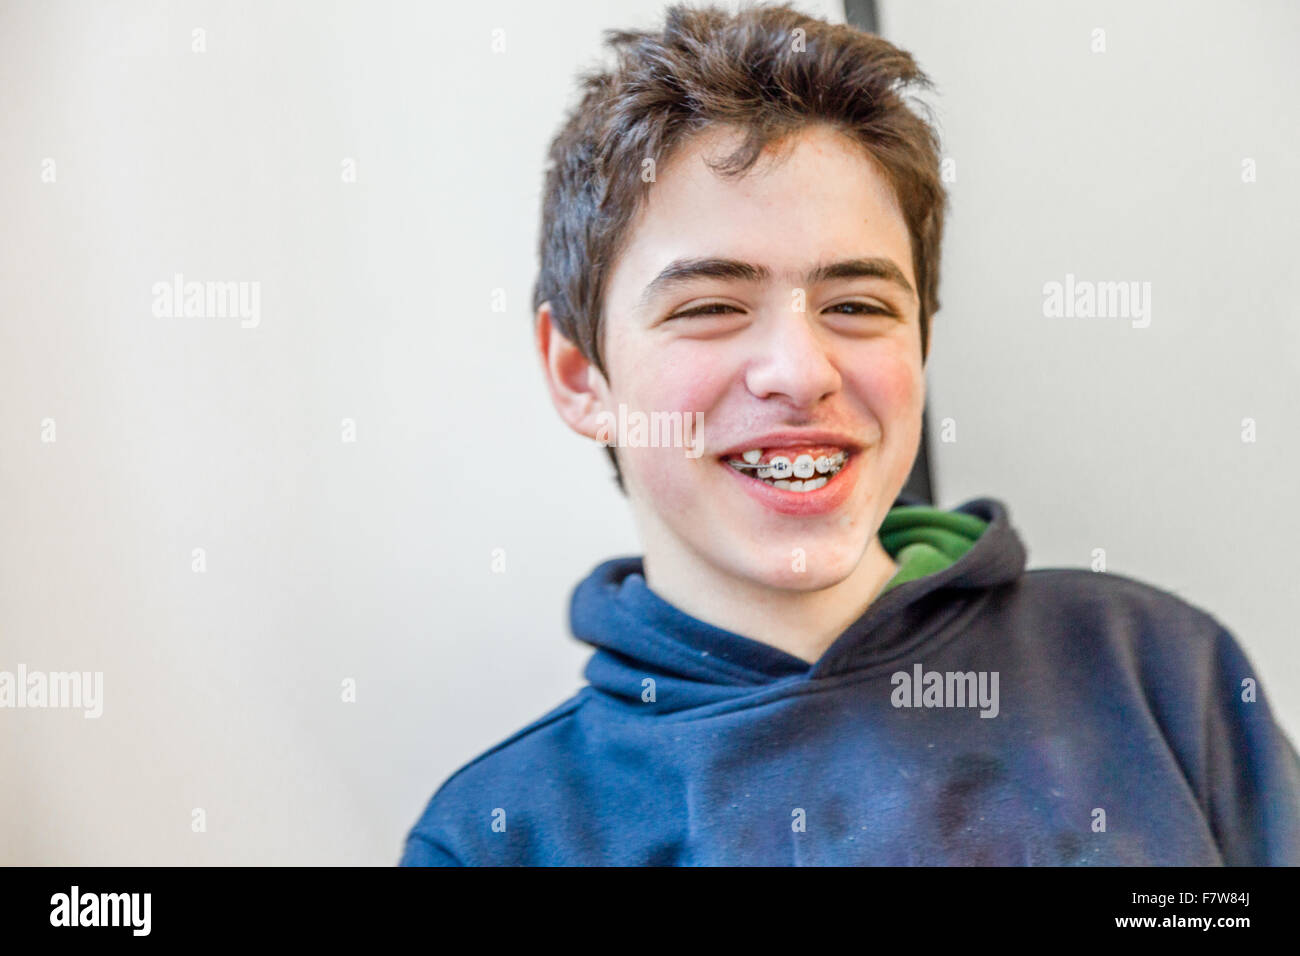 Young boy heureux et souriant à bretelles sur les dents Banque D'Images